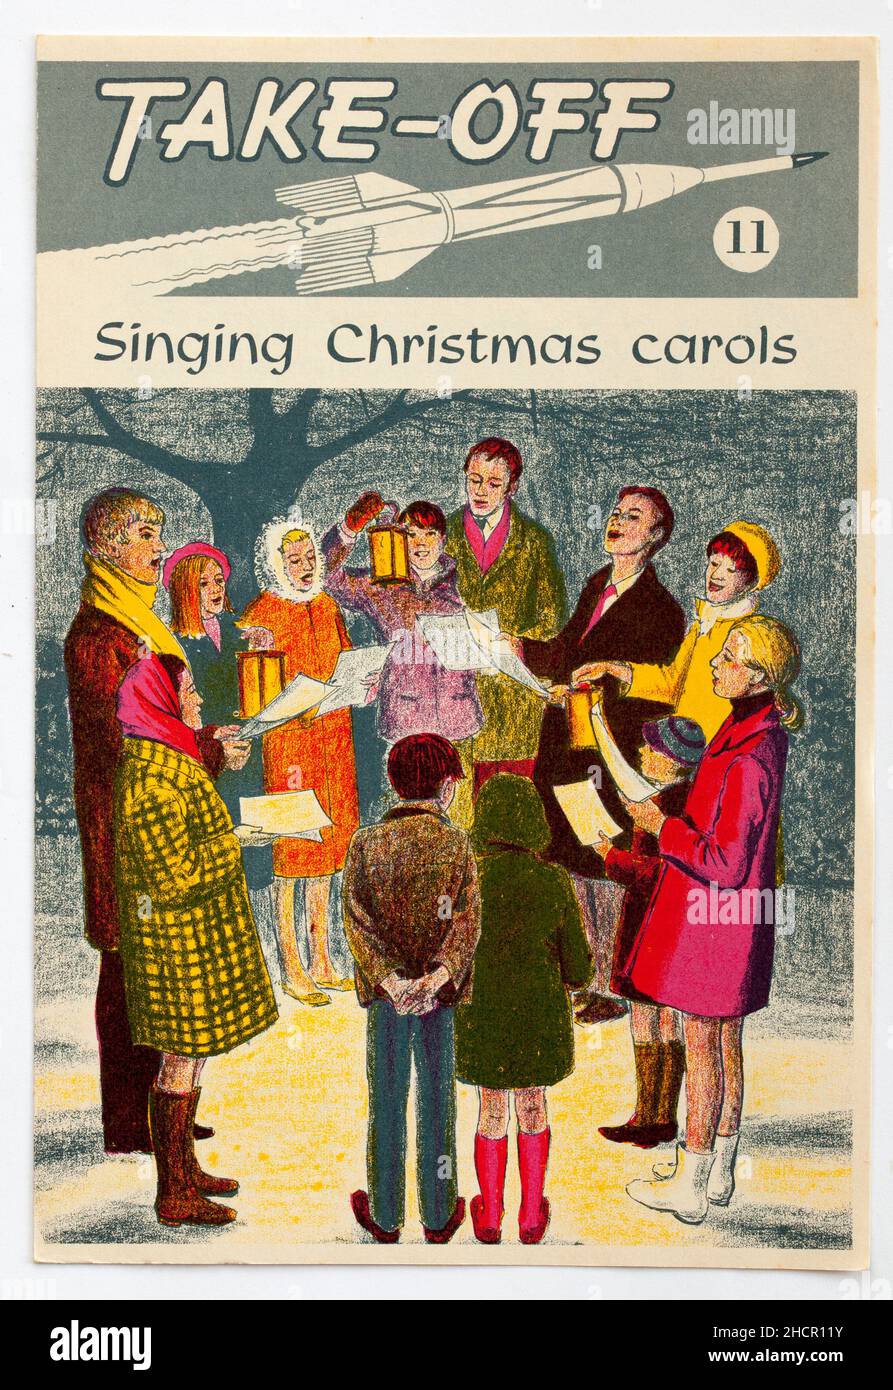 1970s Édition de Noël de Take Off une brochure religieuse publiée par le Conseil national de l'éducation chrétienne Banque D'Images